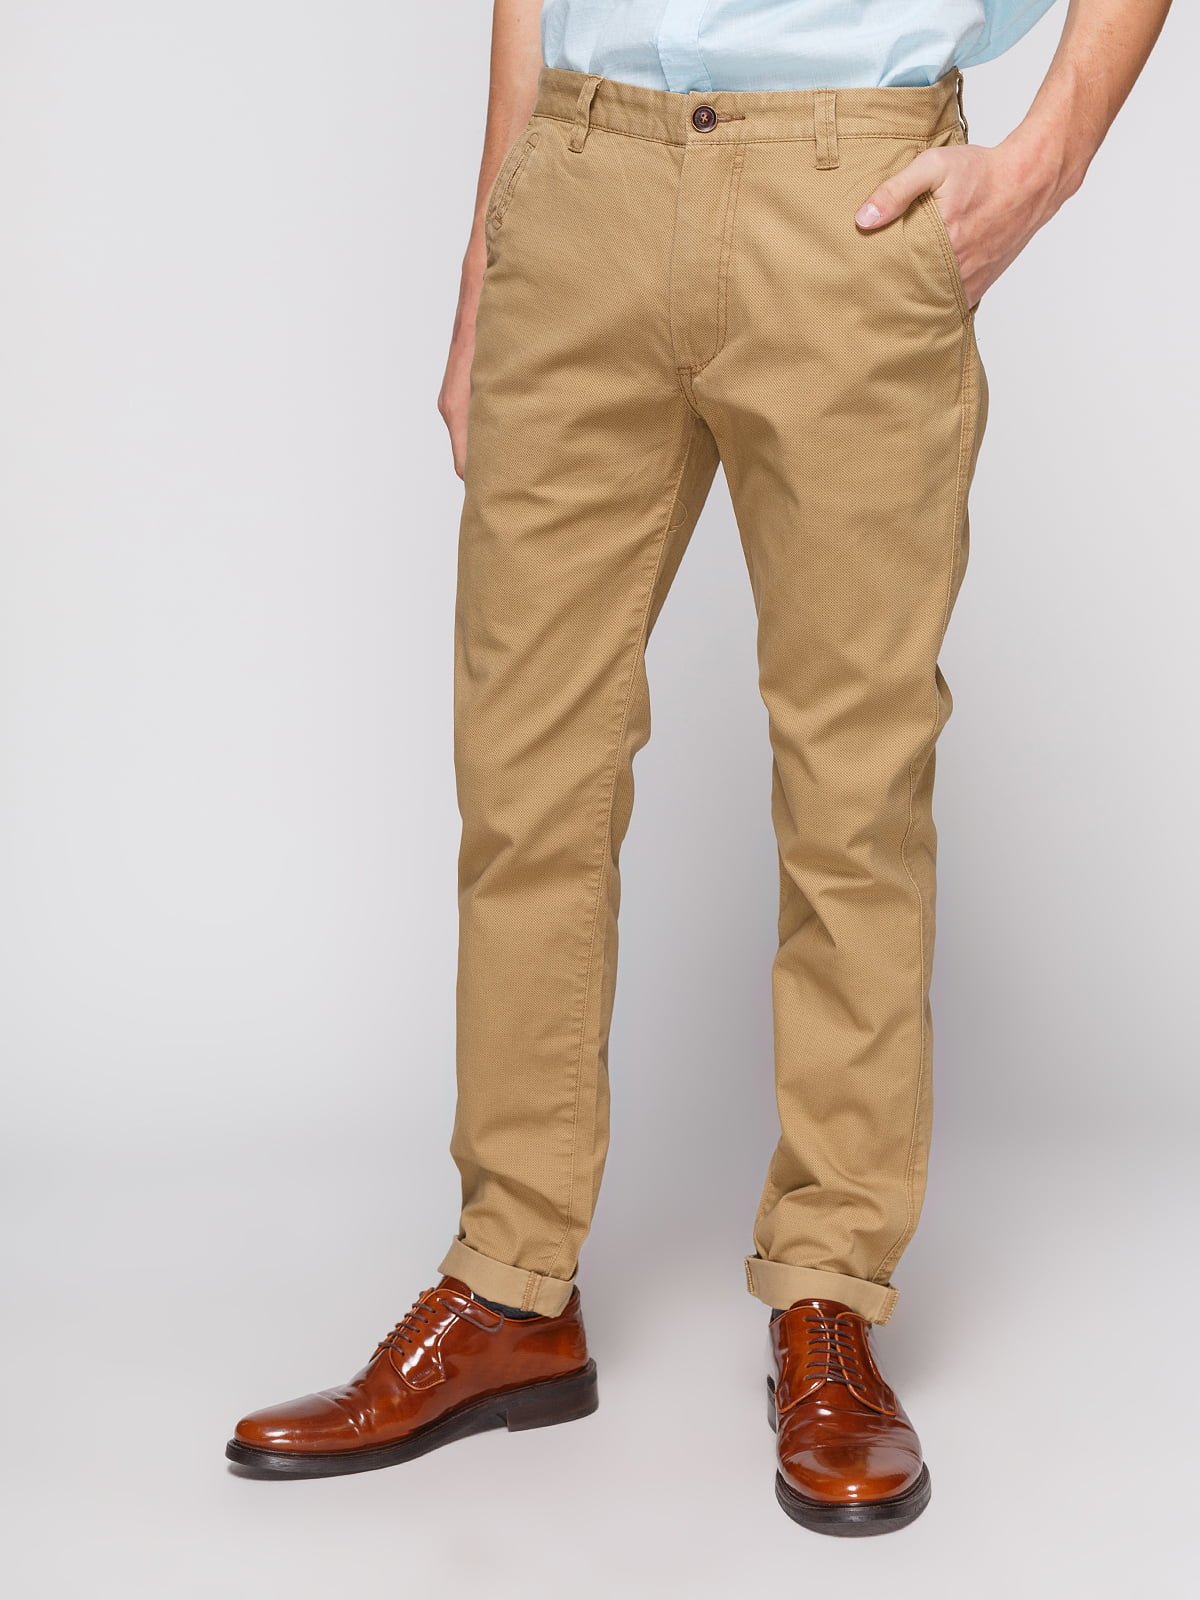 Мужские брюки коричневого цвета